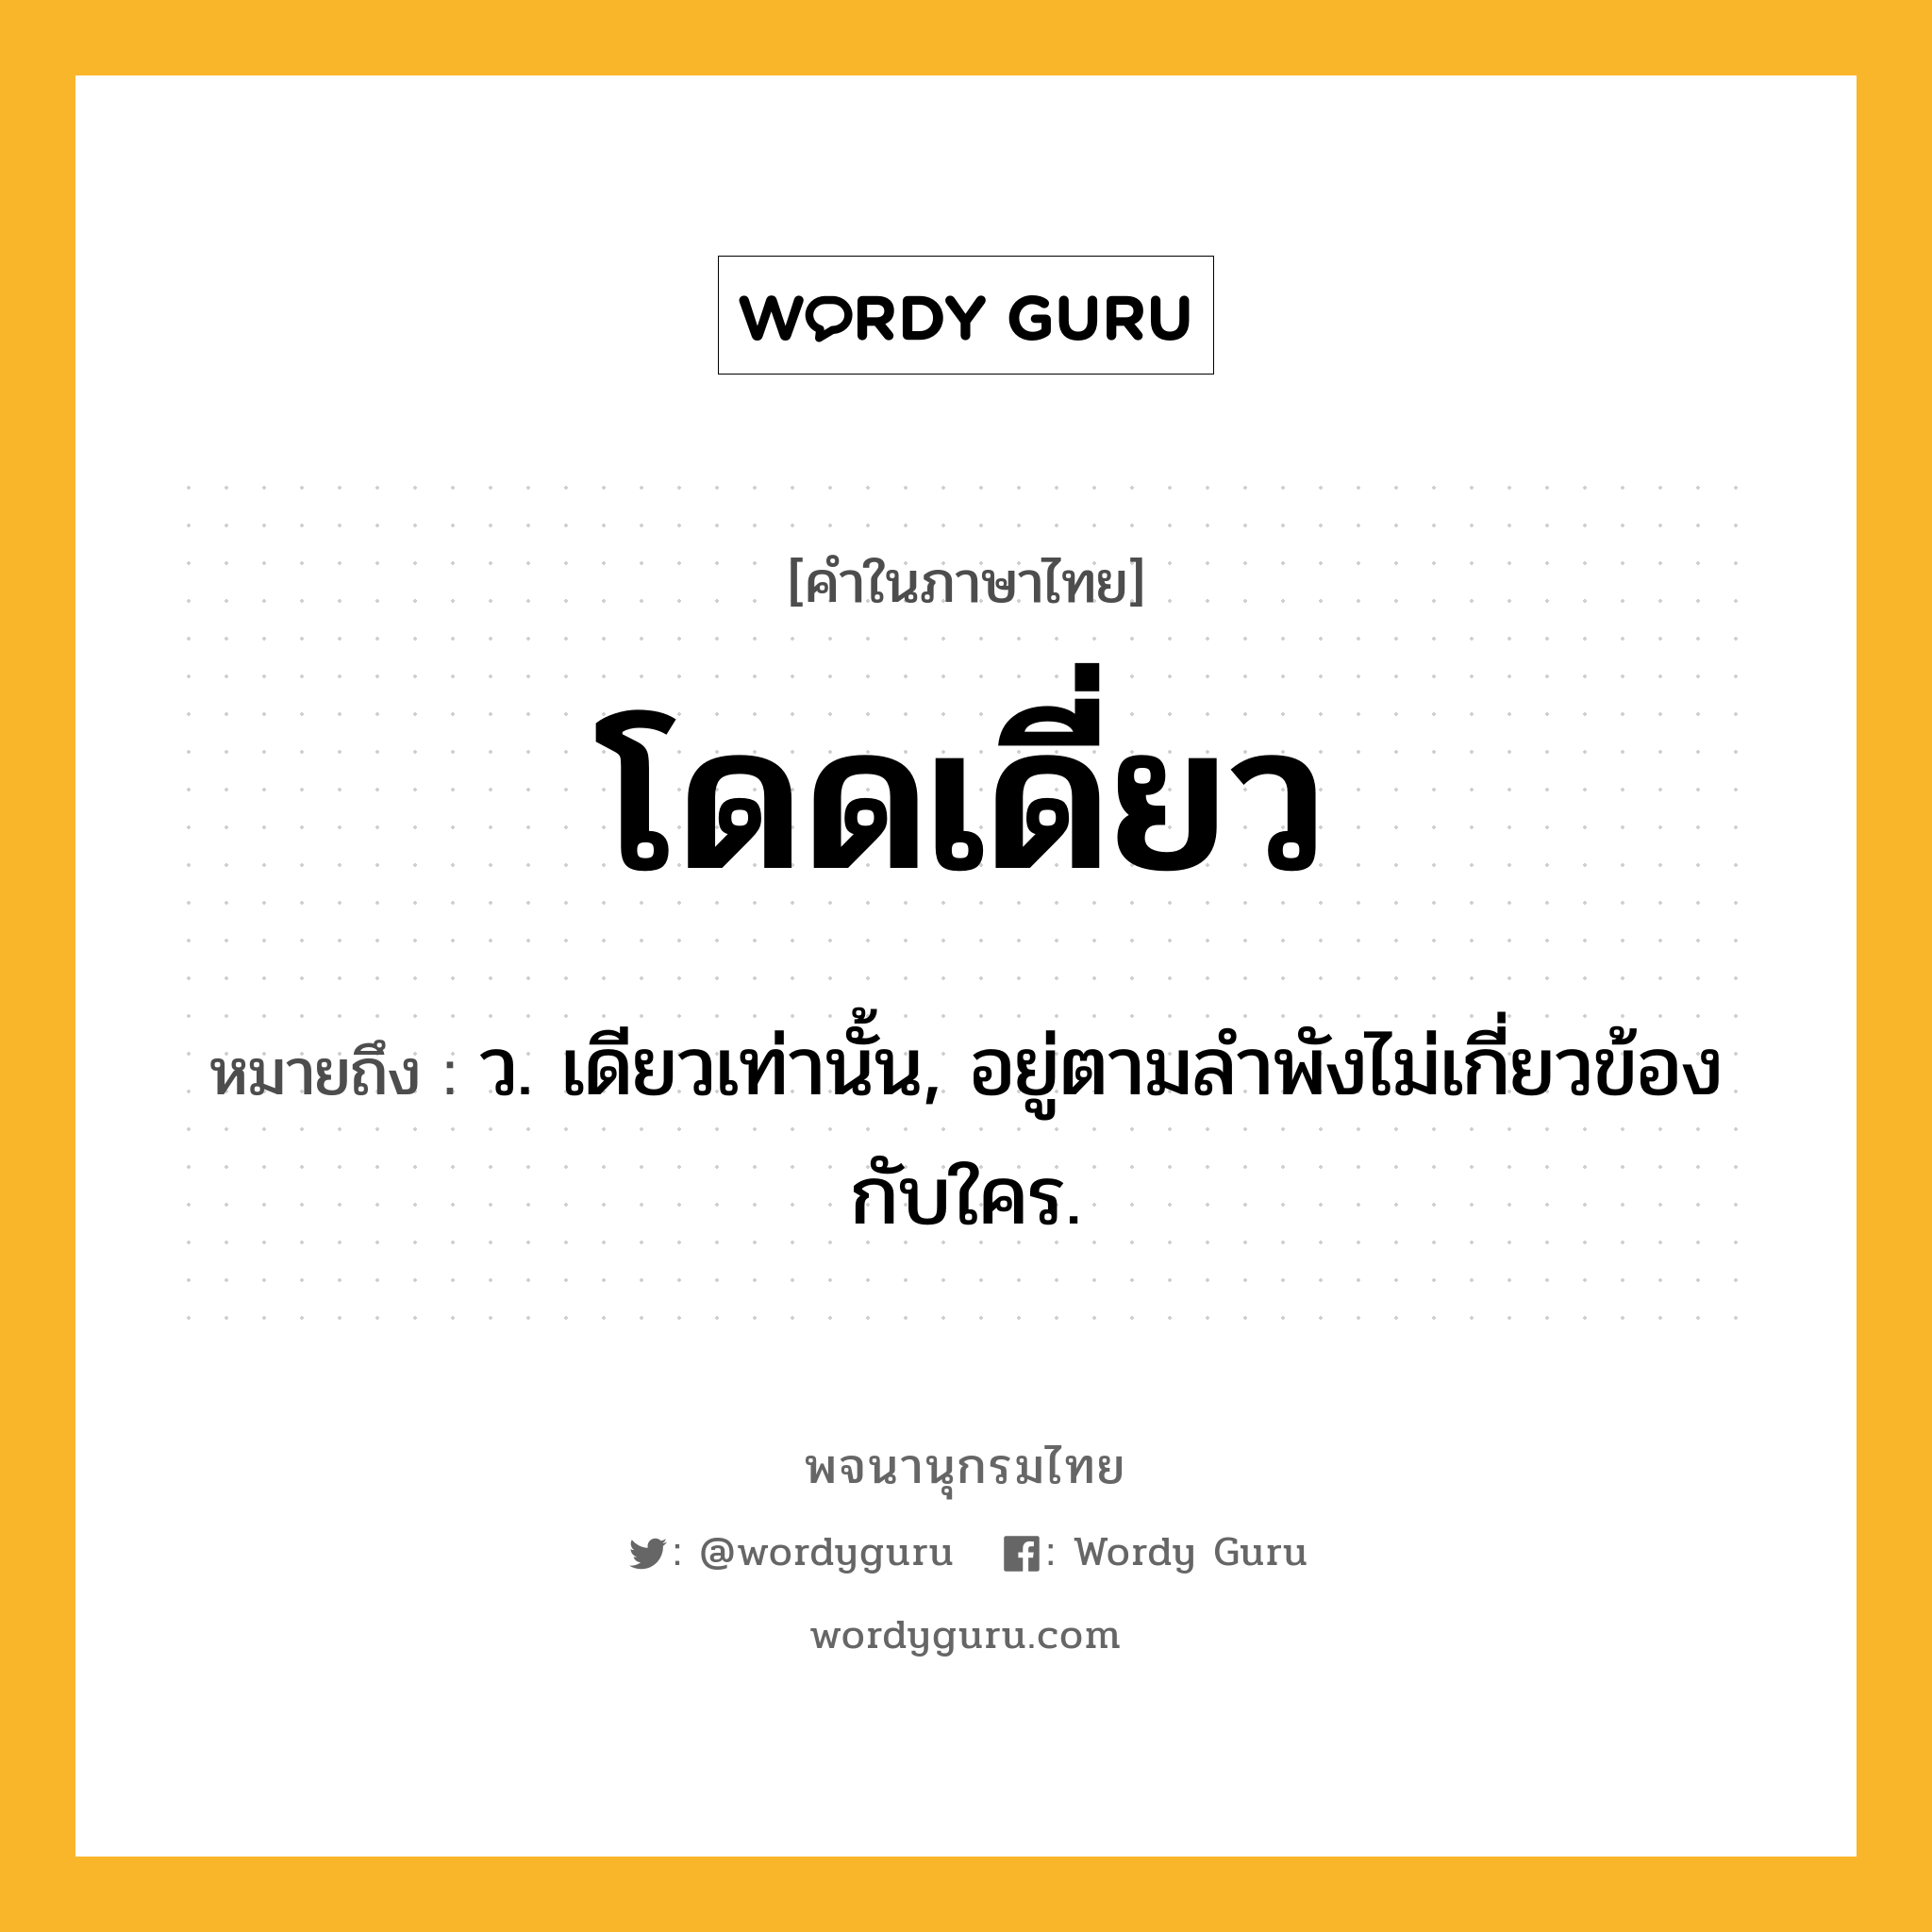 โดดเดี่ยว หมายถึงอะไร?, คำในภาษาไทย โดดเดี่ยว หมายถึง ว. เดียวเท่านั้น, อยู่ตามลําพังไม่เกี่ยวข้องกับใคร.